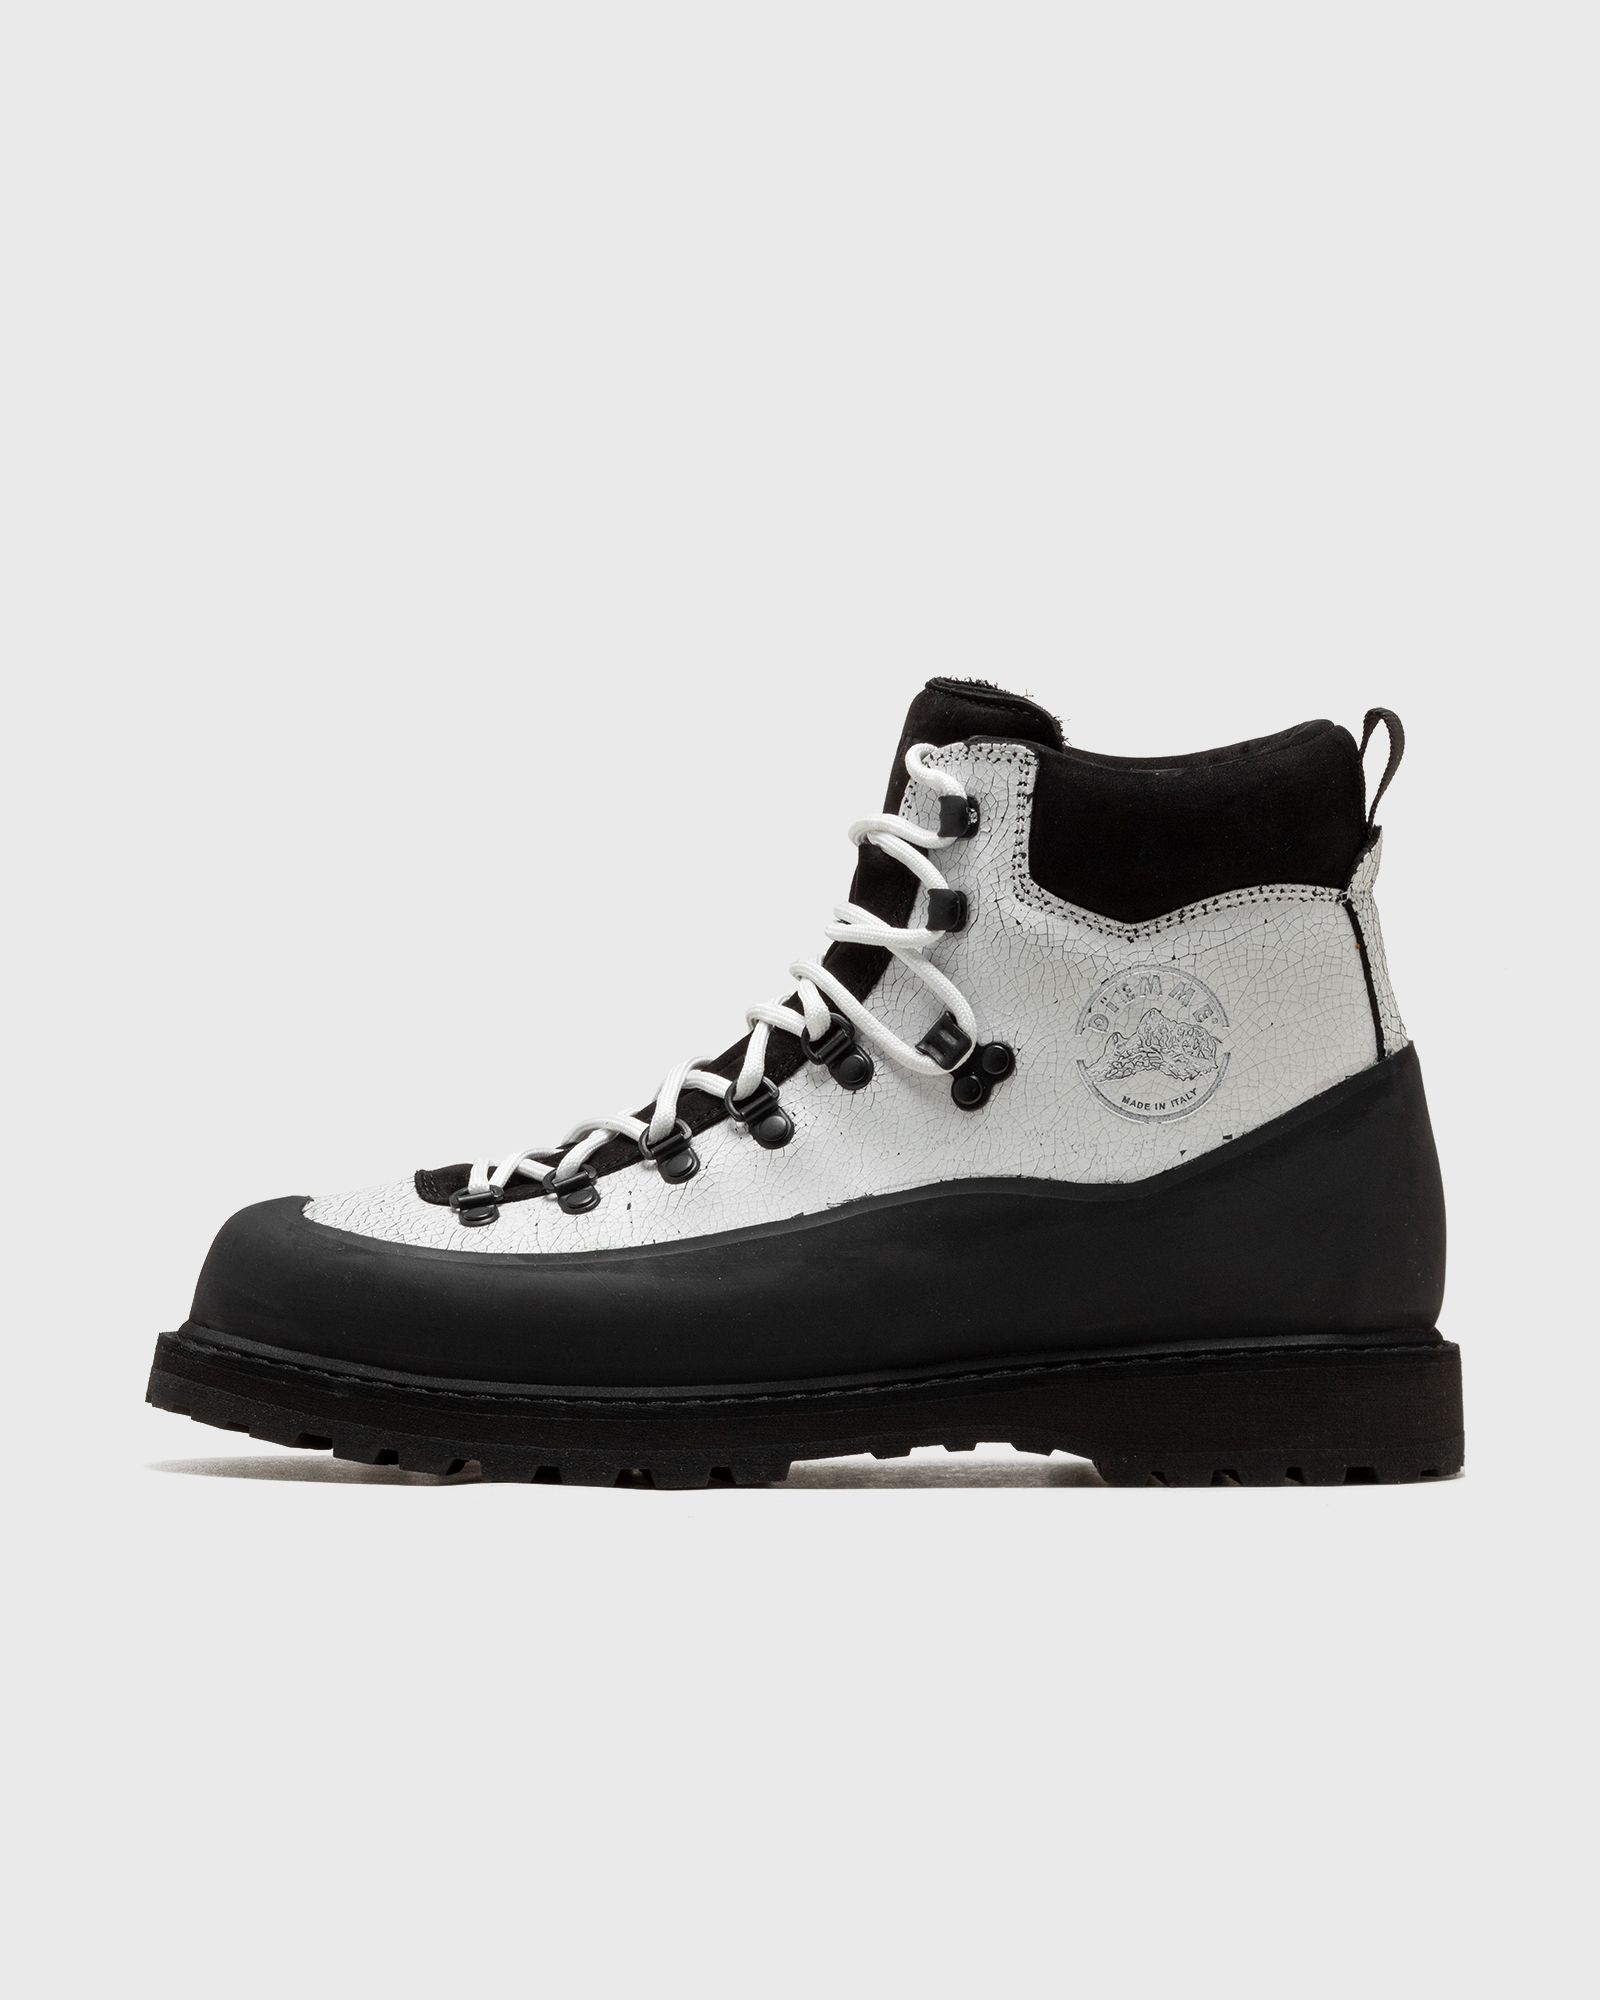 DIEMME - roccia vet sport men boots black|white in größe:42